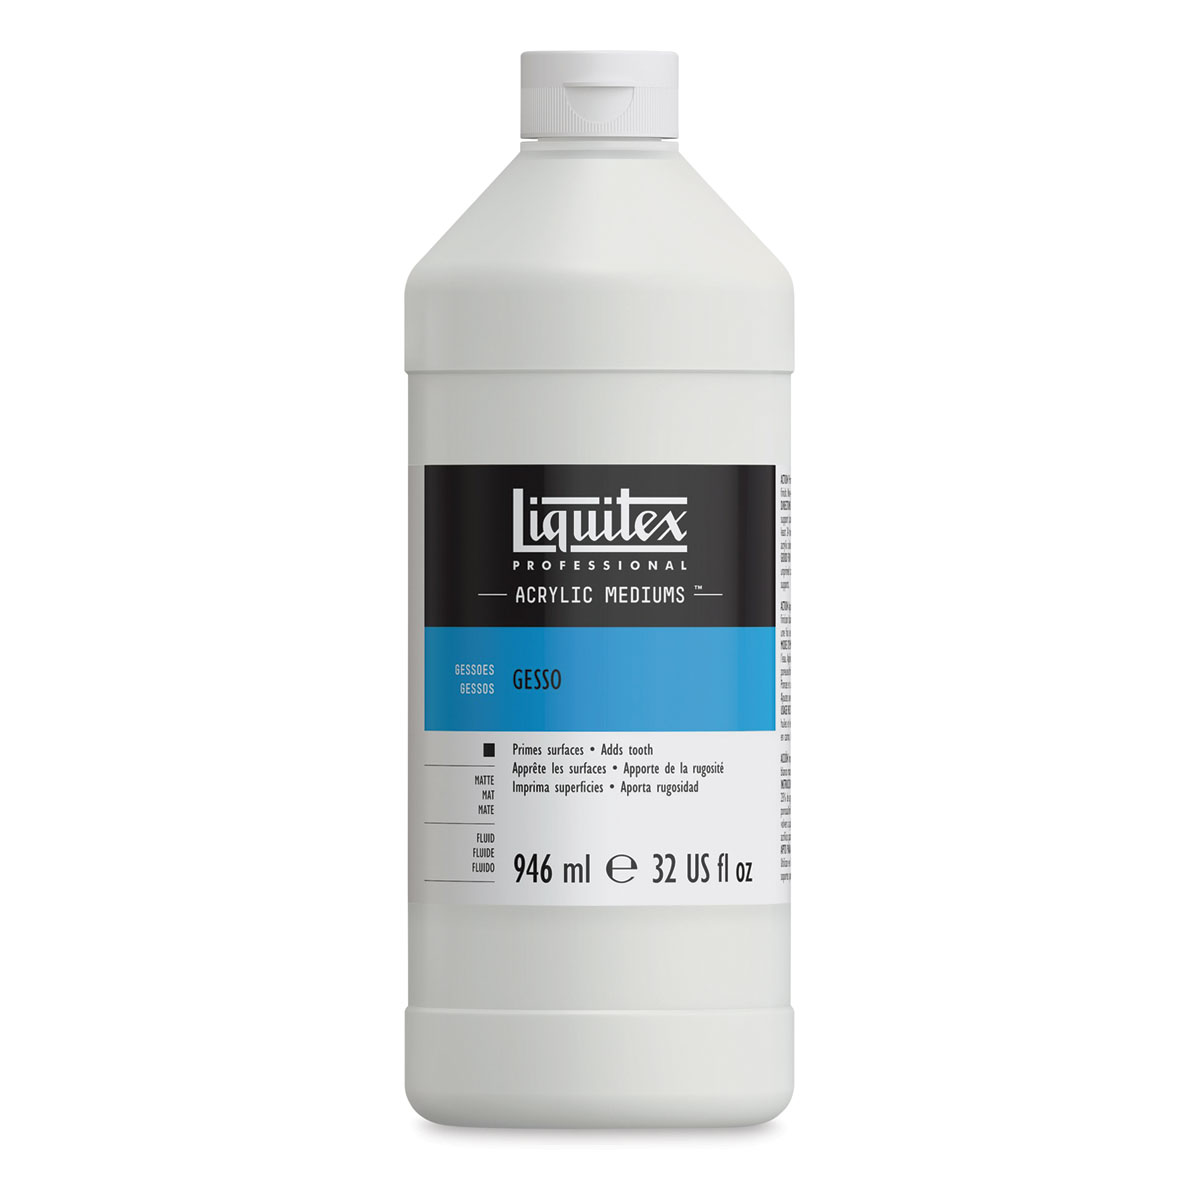 Liquitex Acrylic Gesso - White, 32 oz bottle